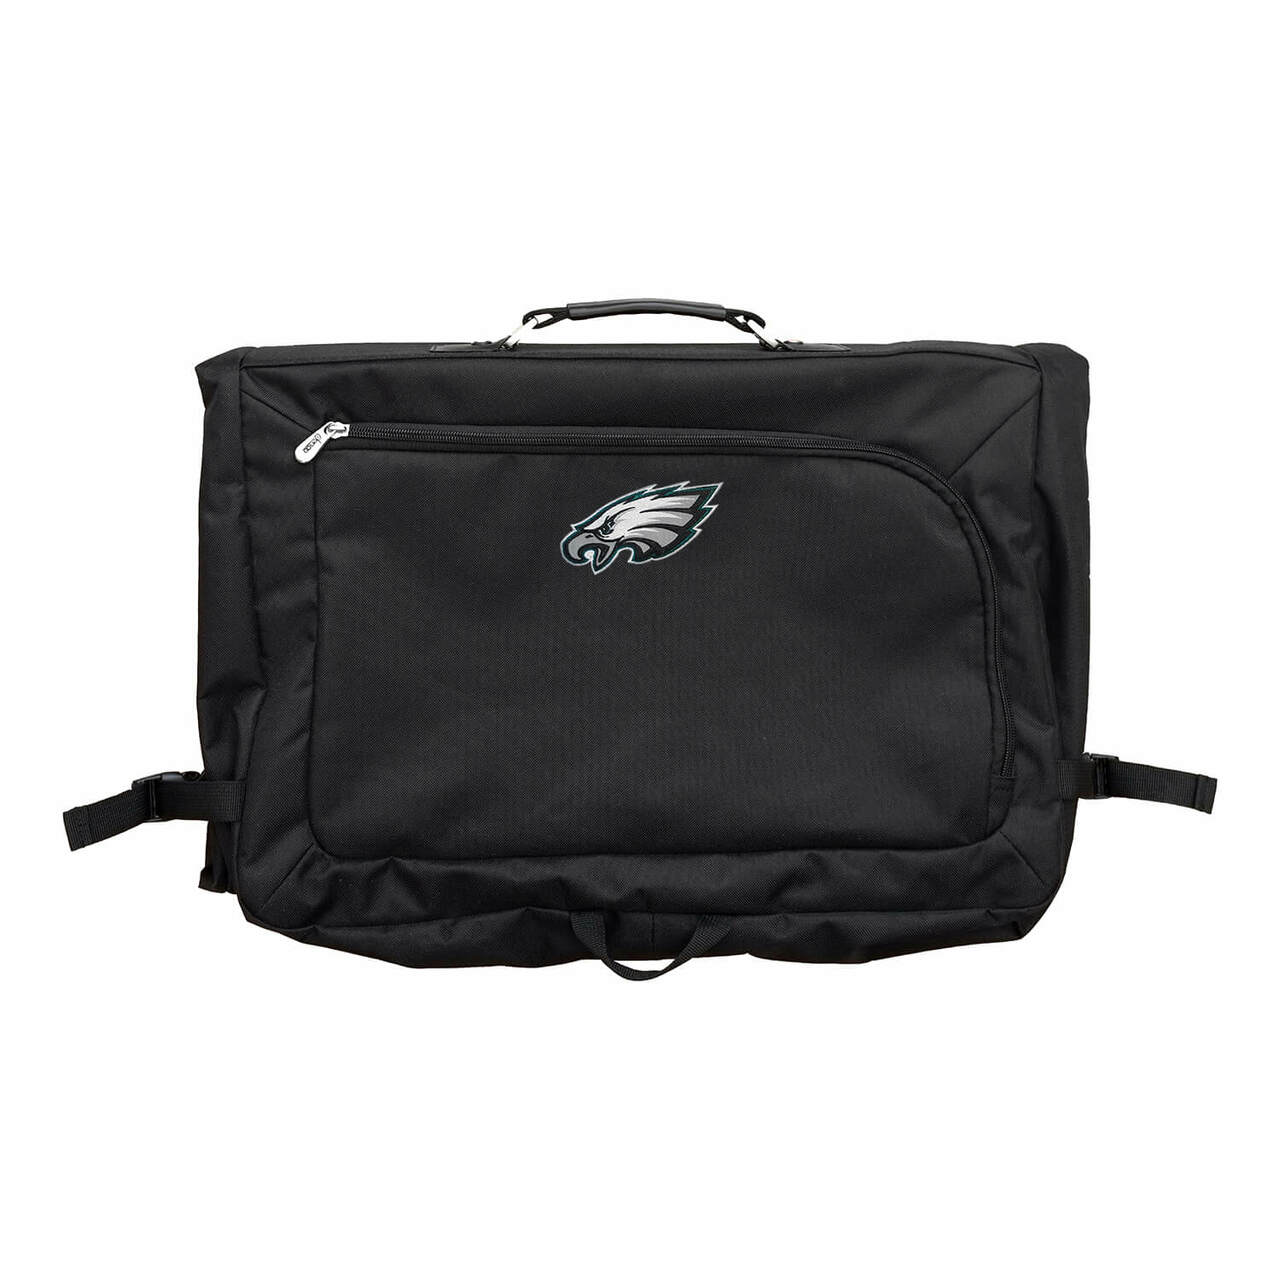 Philadelphia Eagles 18" Carry On Garment Bag